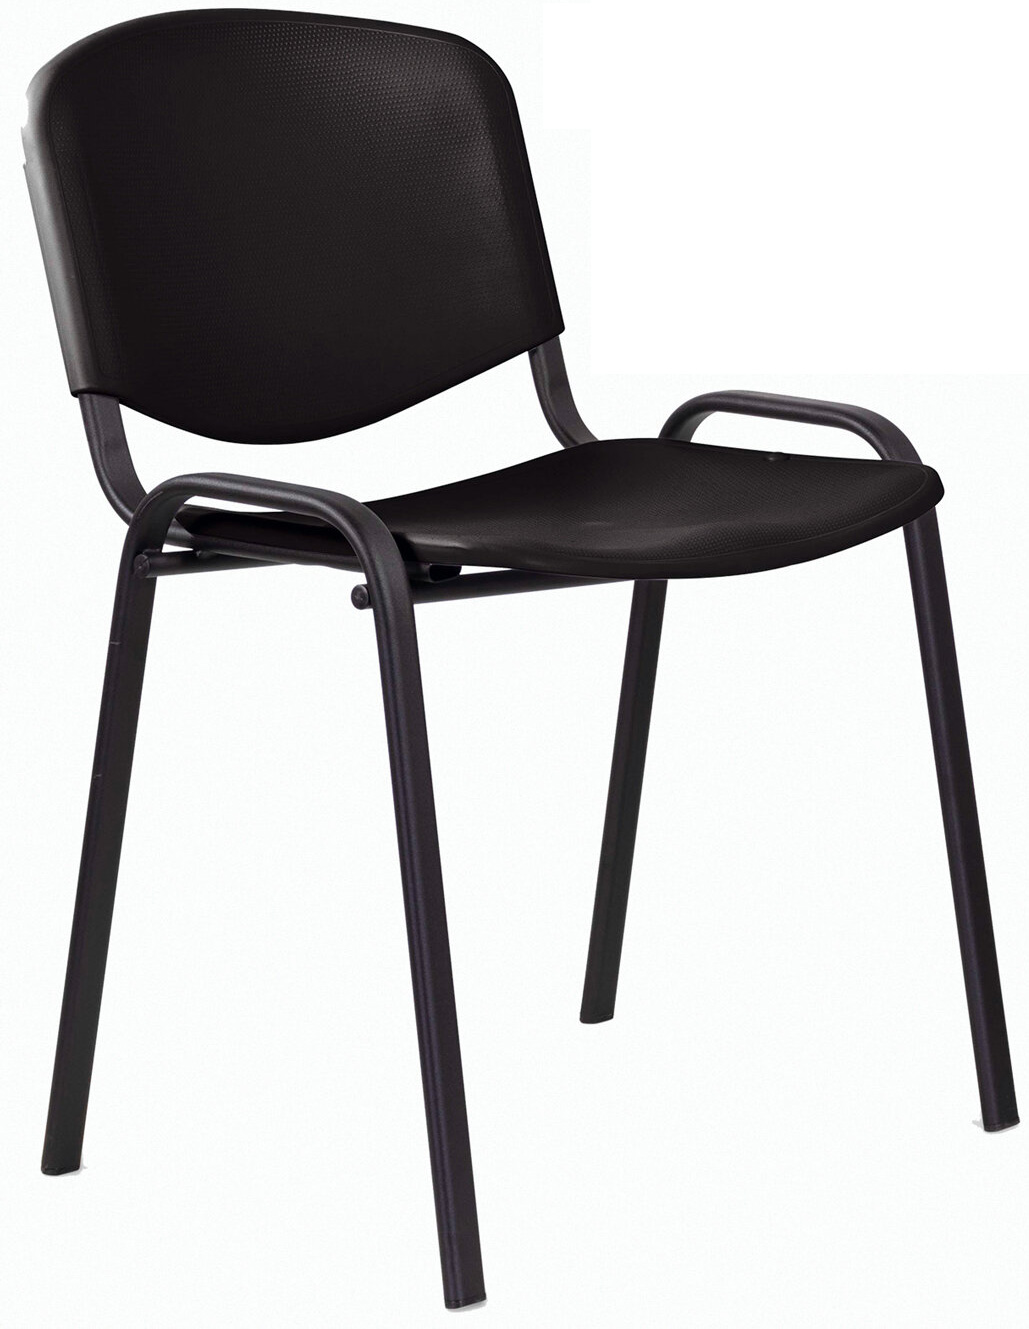 Стул STAFF Iso Plast CF-009, каркас черный, сиденье и спинка пластик